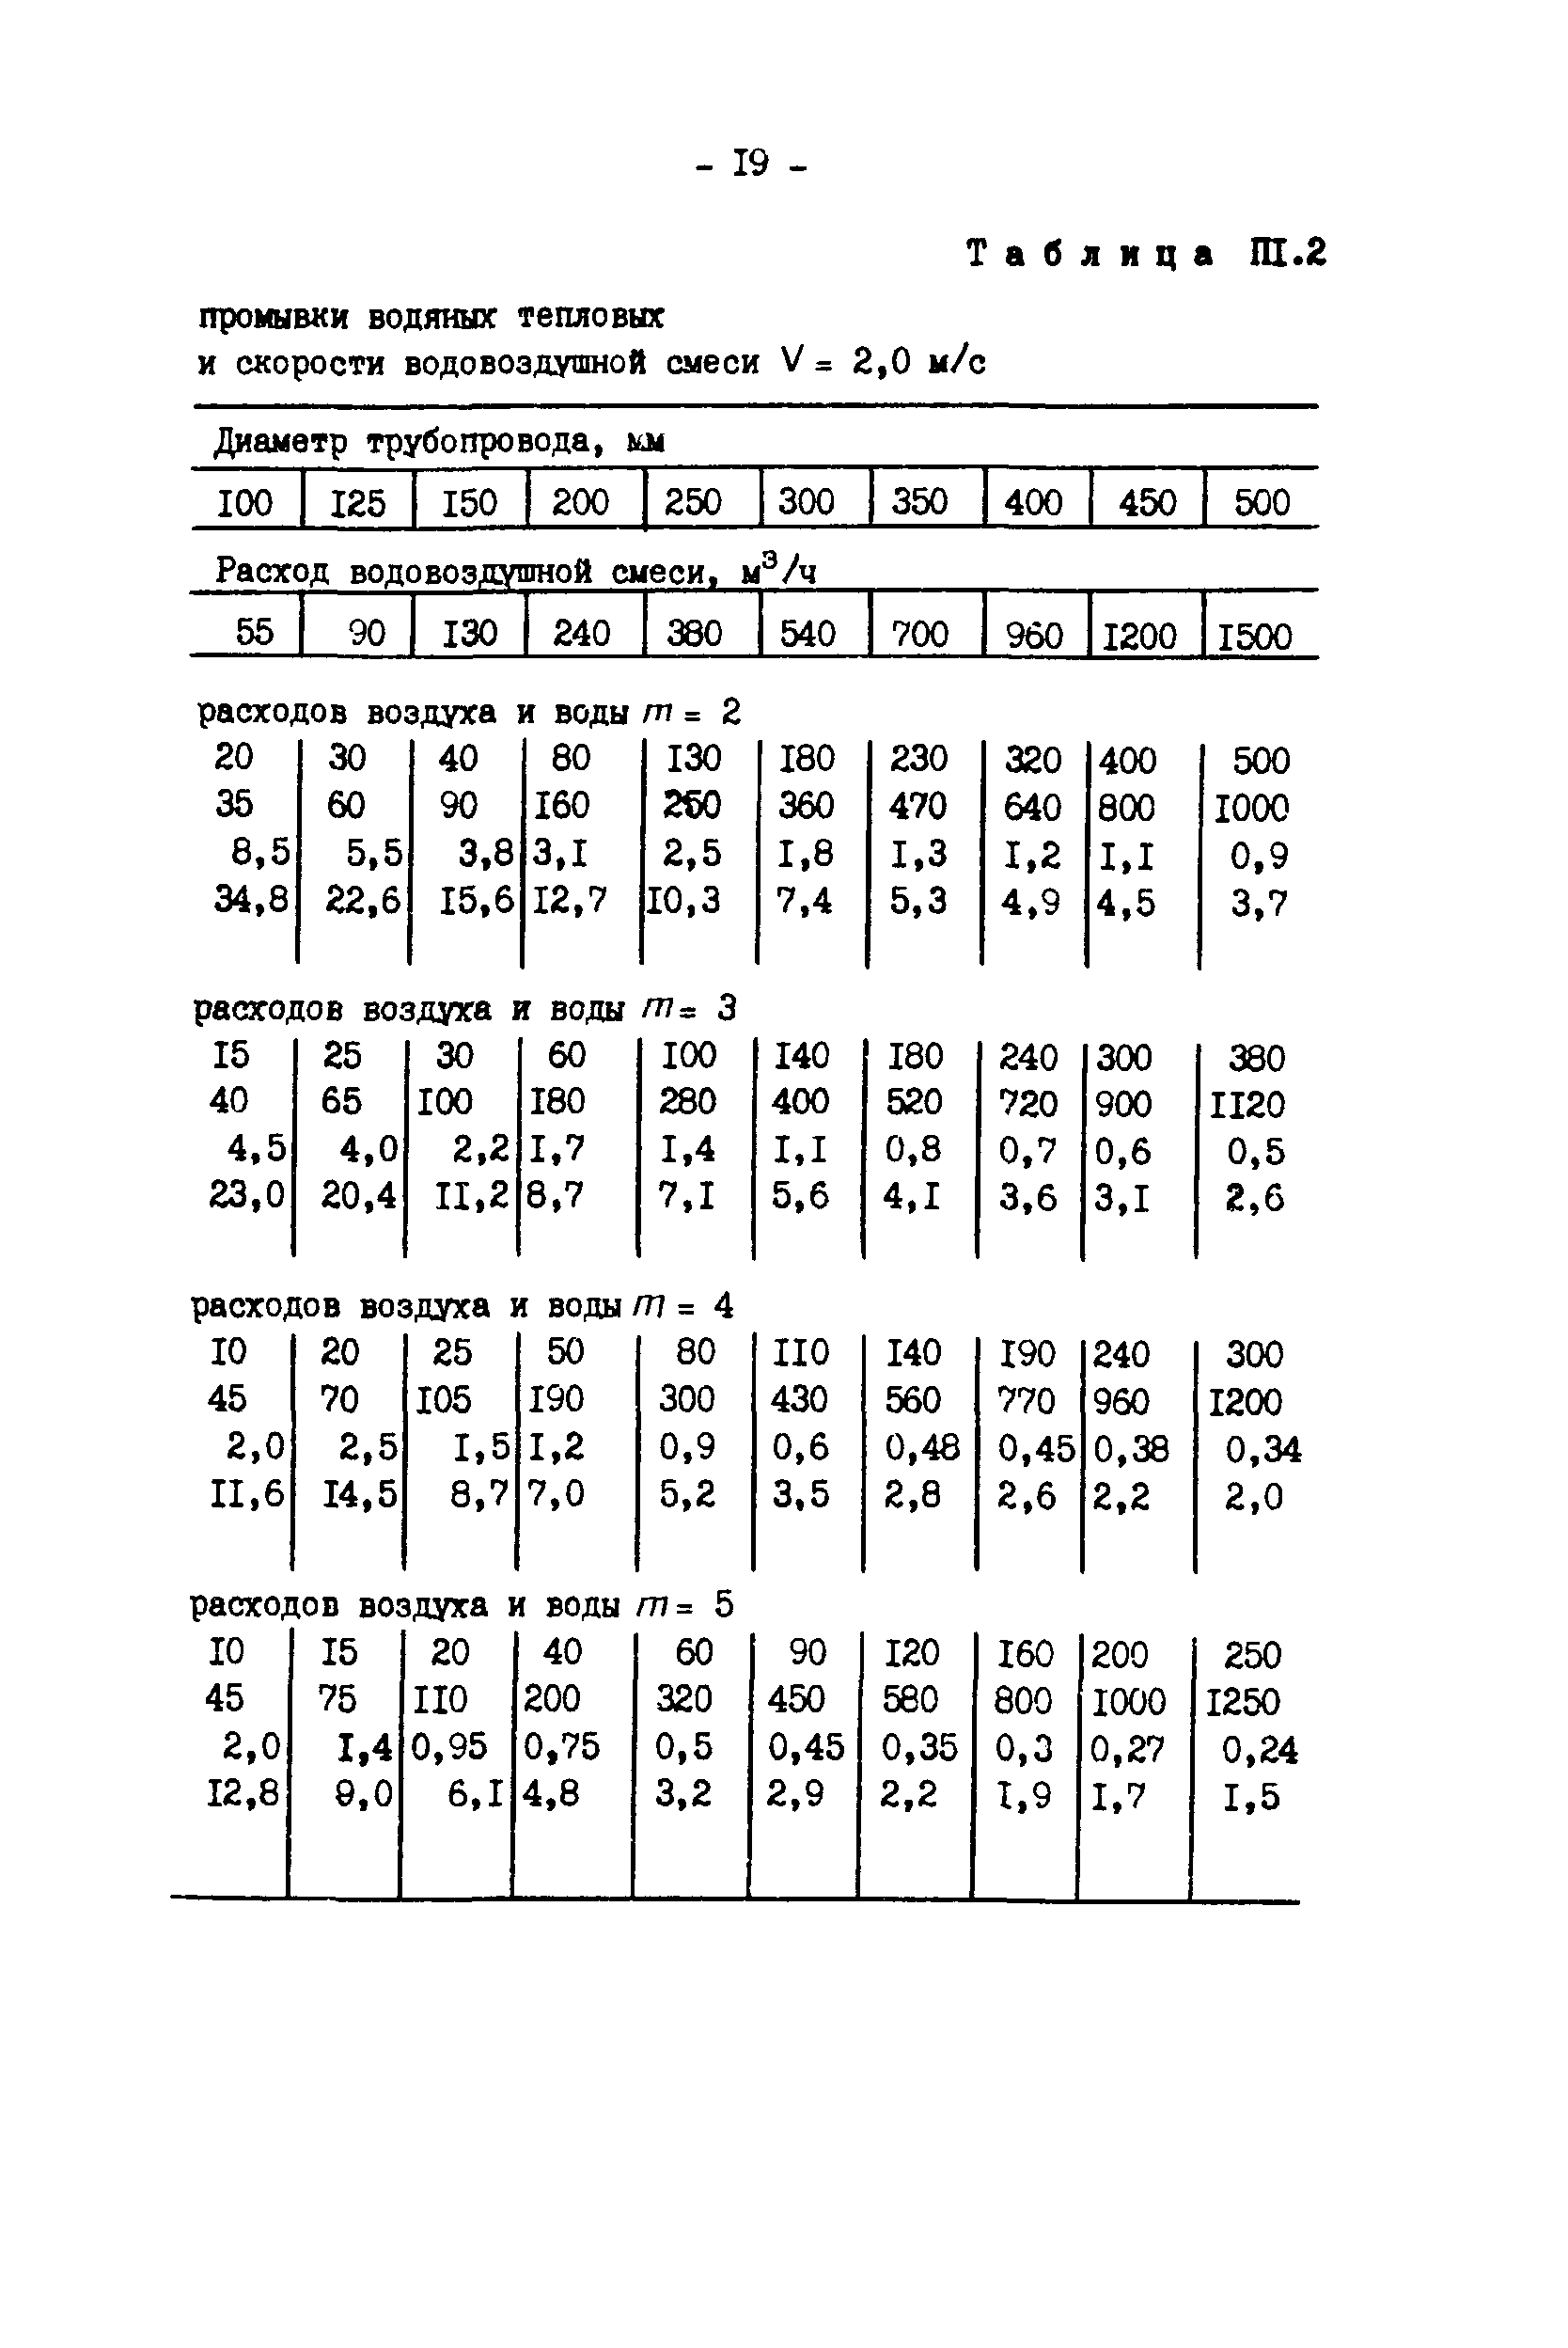 РД 34.20.327-87